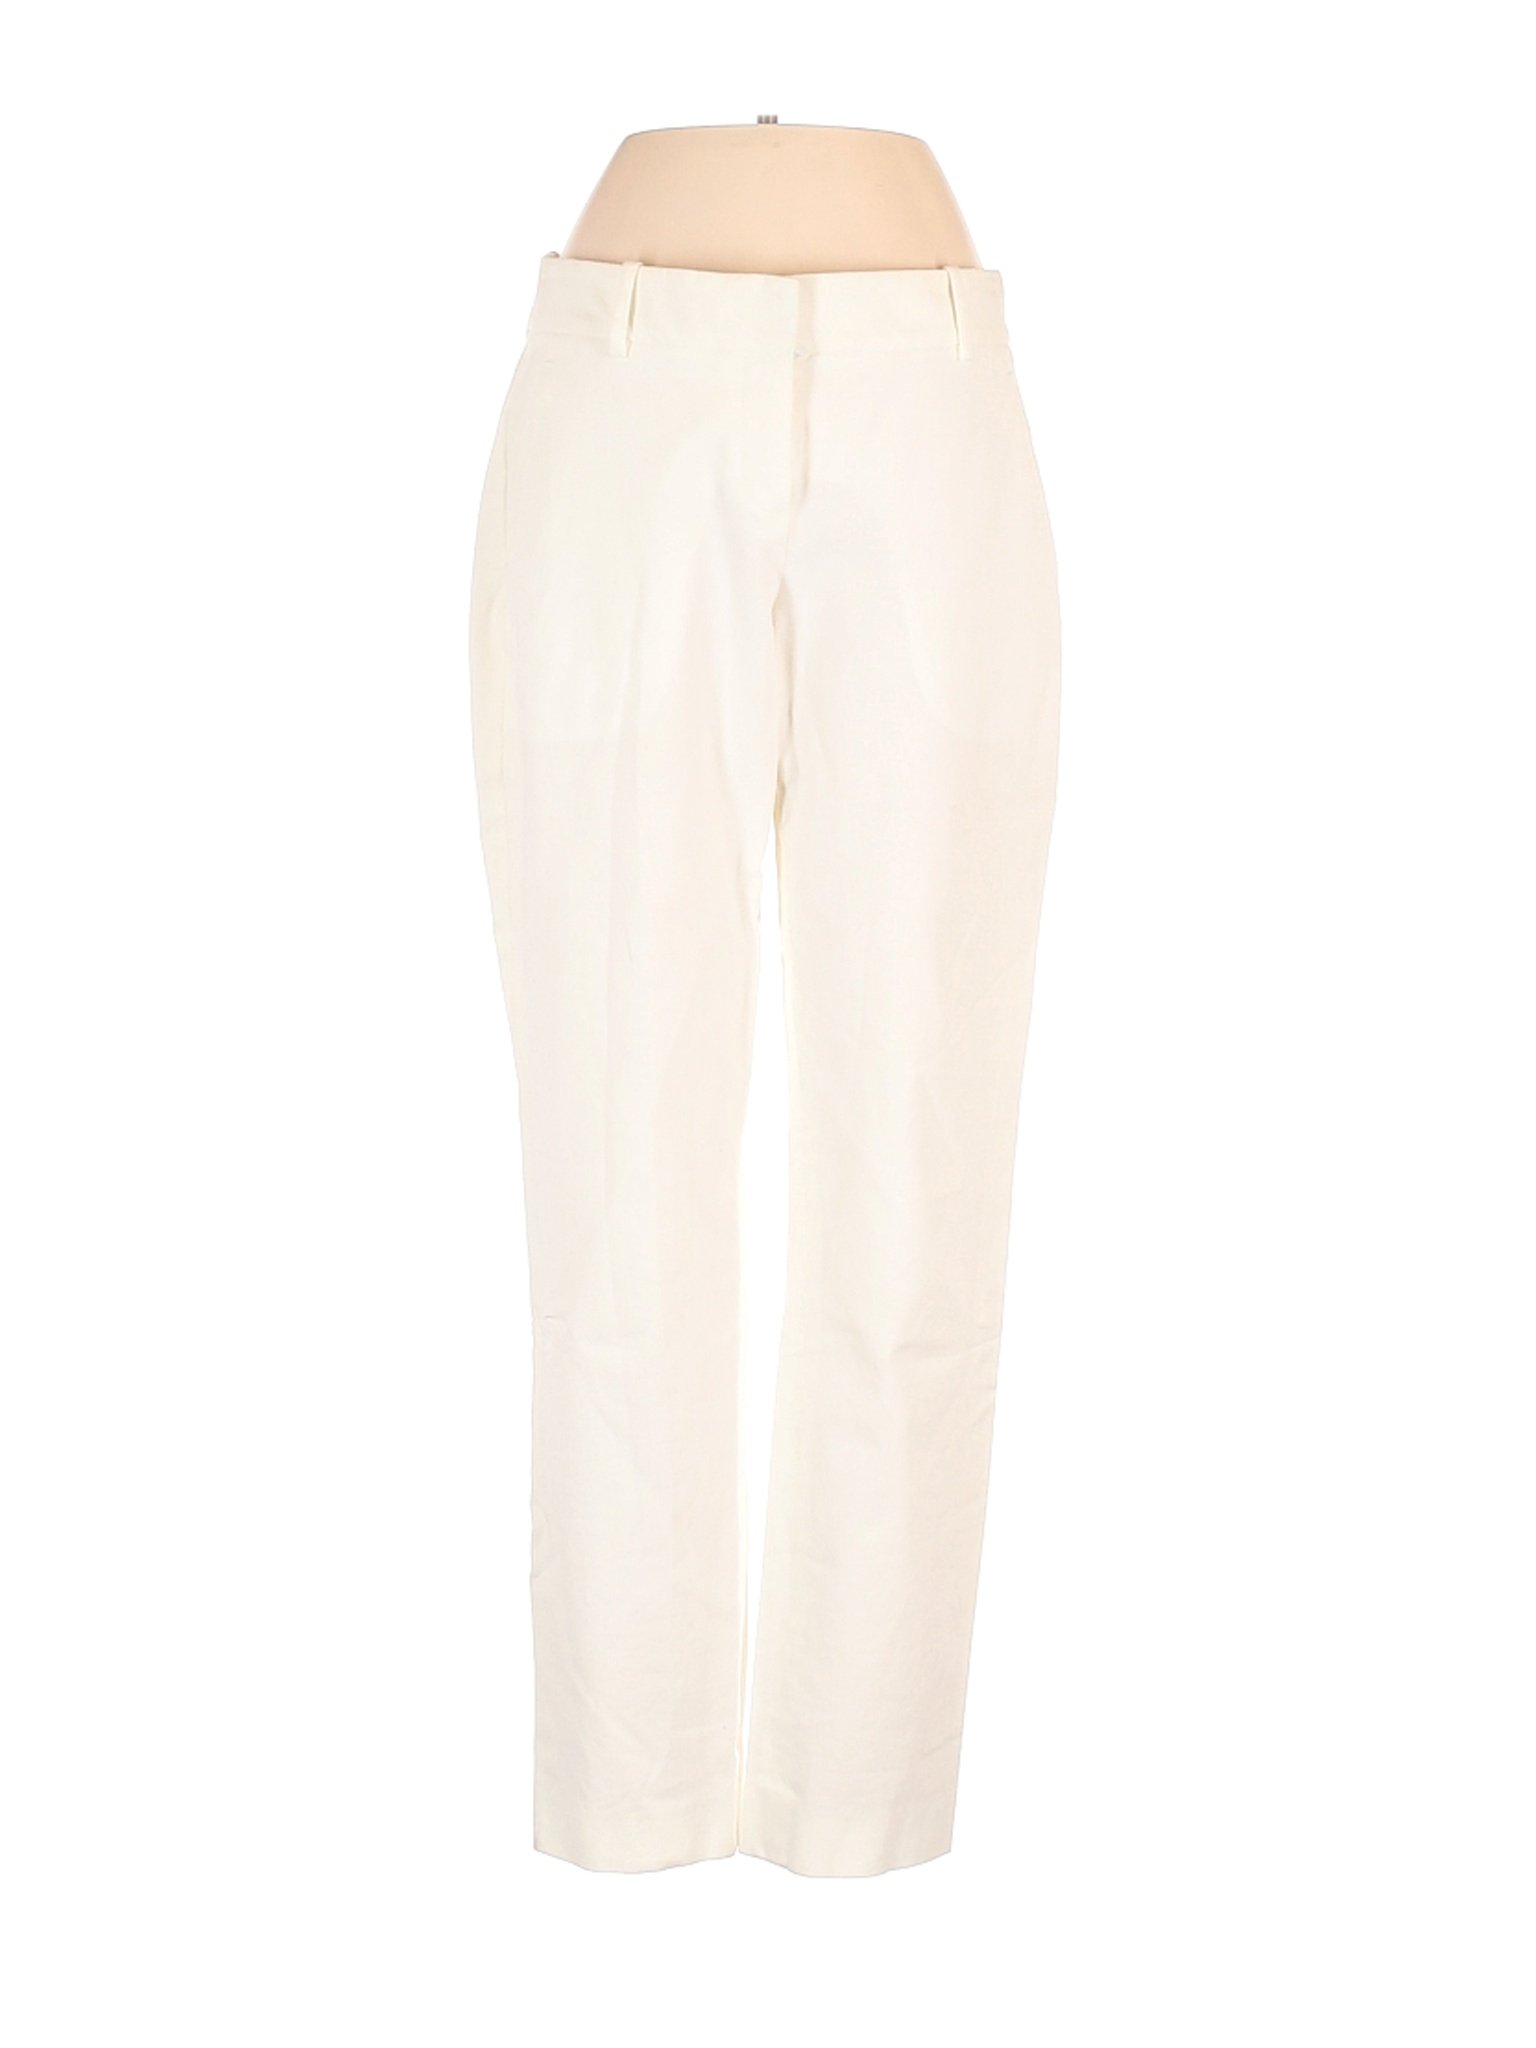 Theory Women Ivory Dress Pants 2 | eBay